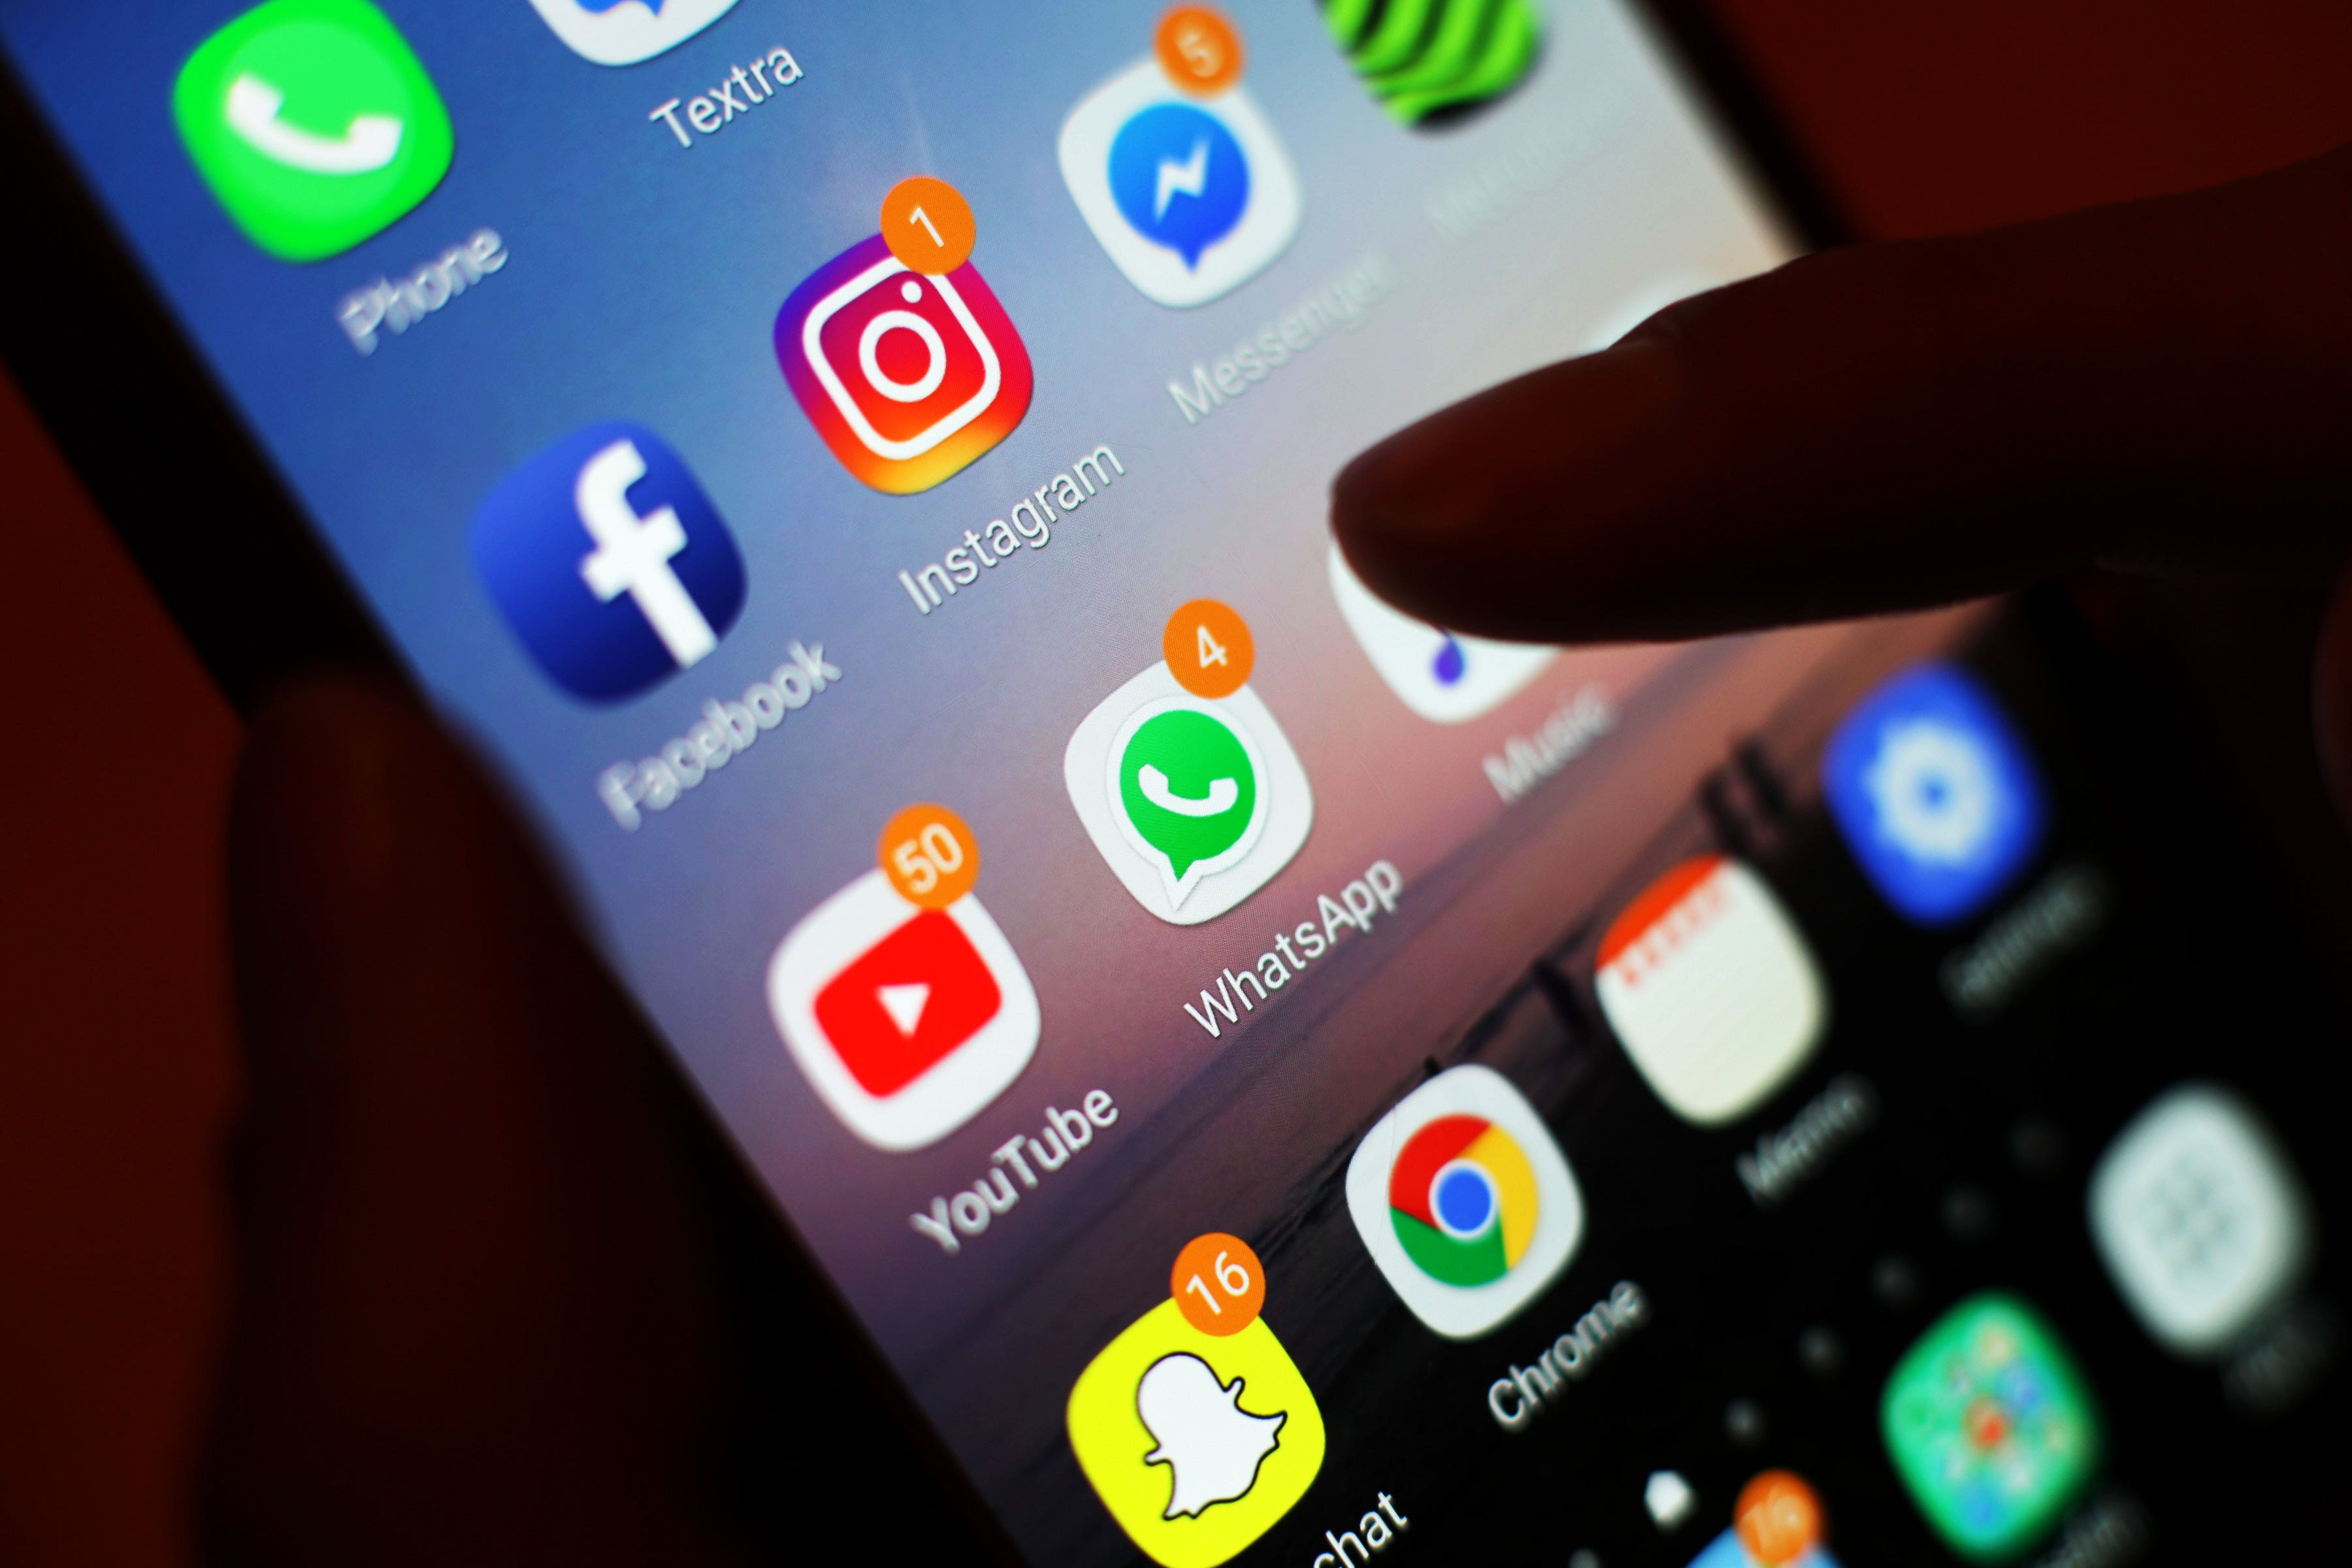 Aplicaciones de redes sociales, incluidas Facebook, Instagram, YouTube y WhatsApp, que se muestran en la pantalla de un teléfono móvil (PA)